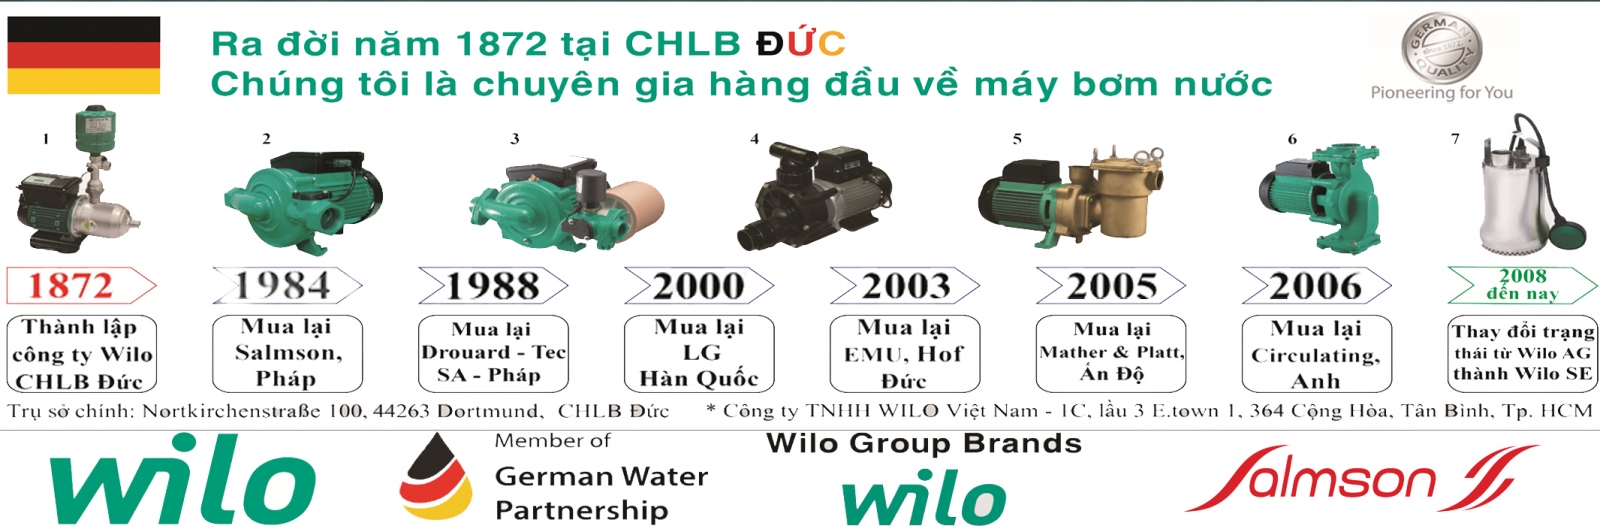 Quá trình phát triển Công ty máy bơm nước WILO - Đức